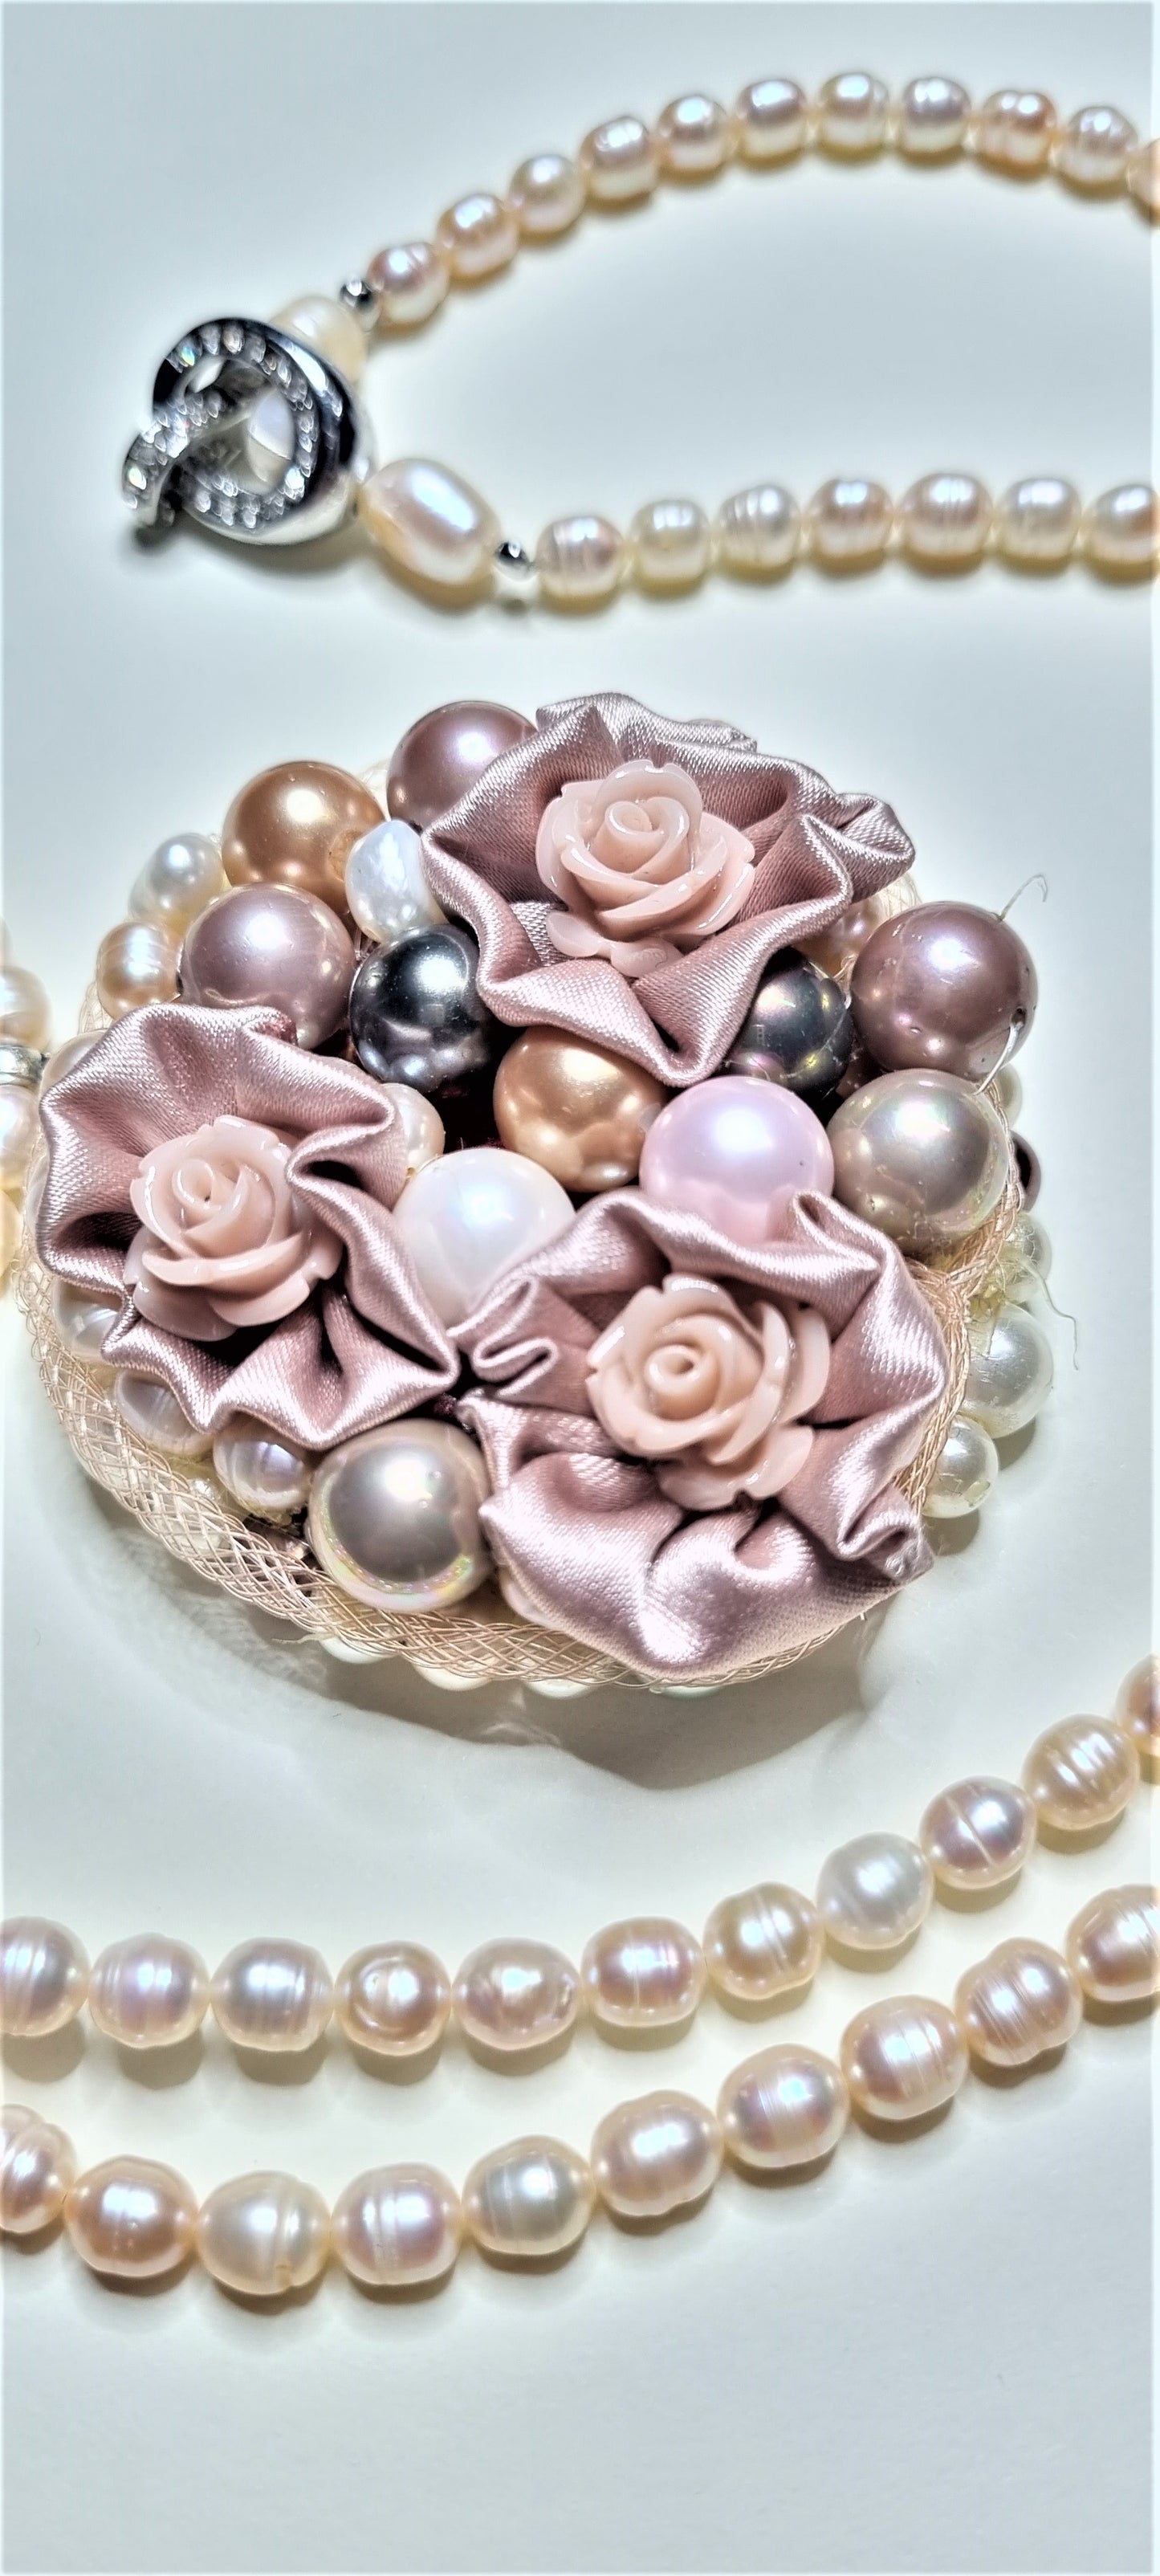 Collana LE ROSE .018 lunga, perline avorio con prezioso ciondolo con perle e rose.